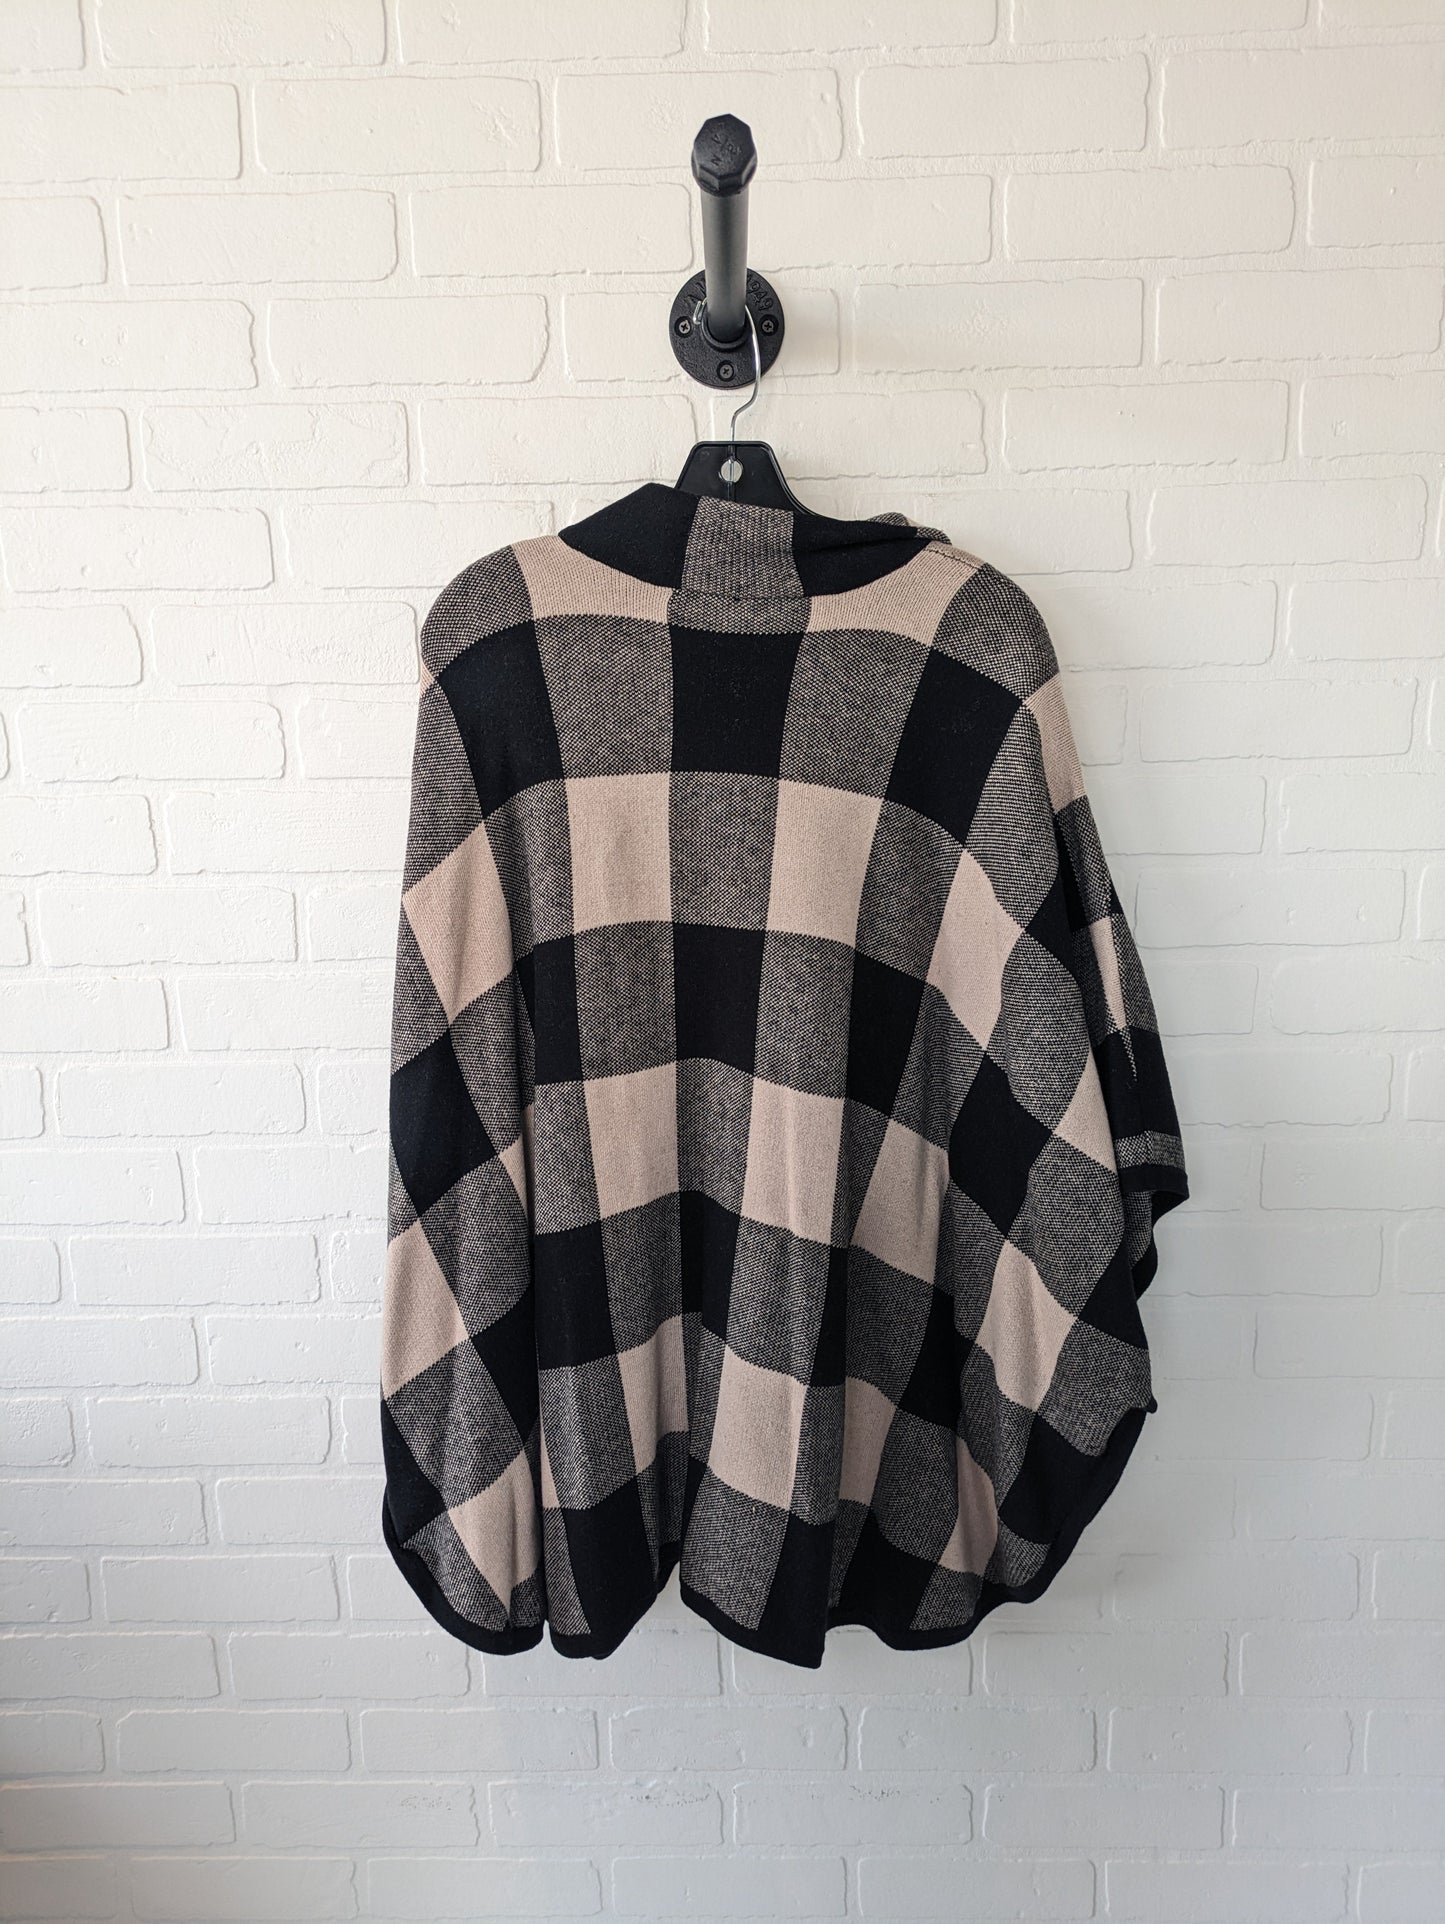 Sweater Cardigan By Jones New York  Size: 1x